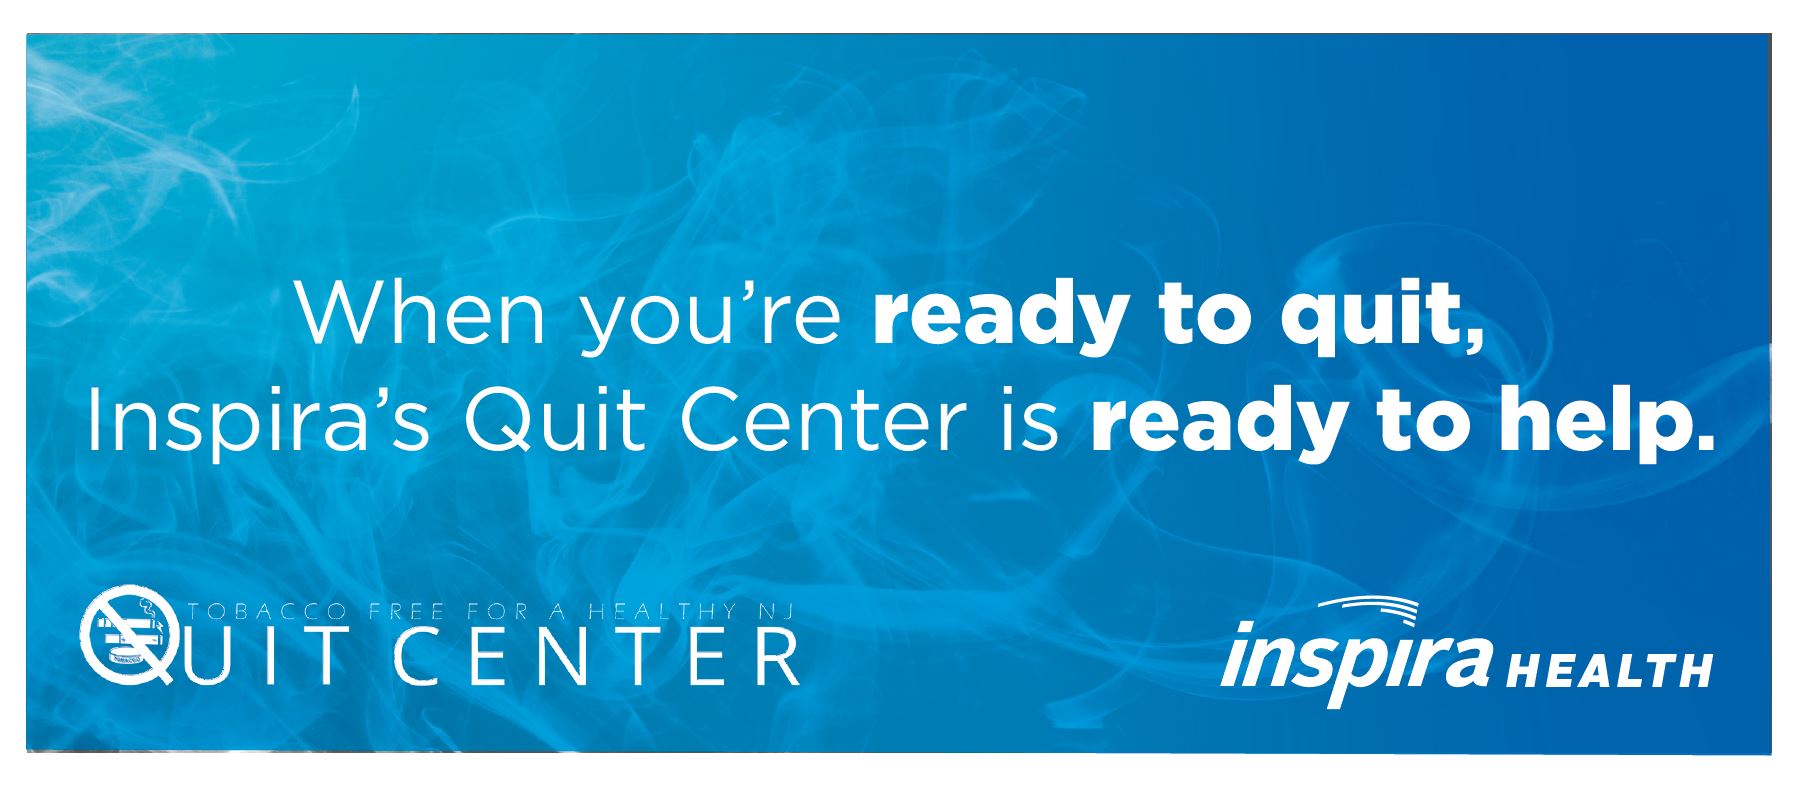 Quit Center website slide